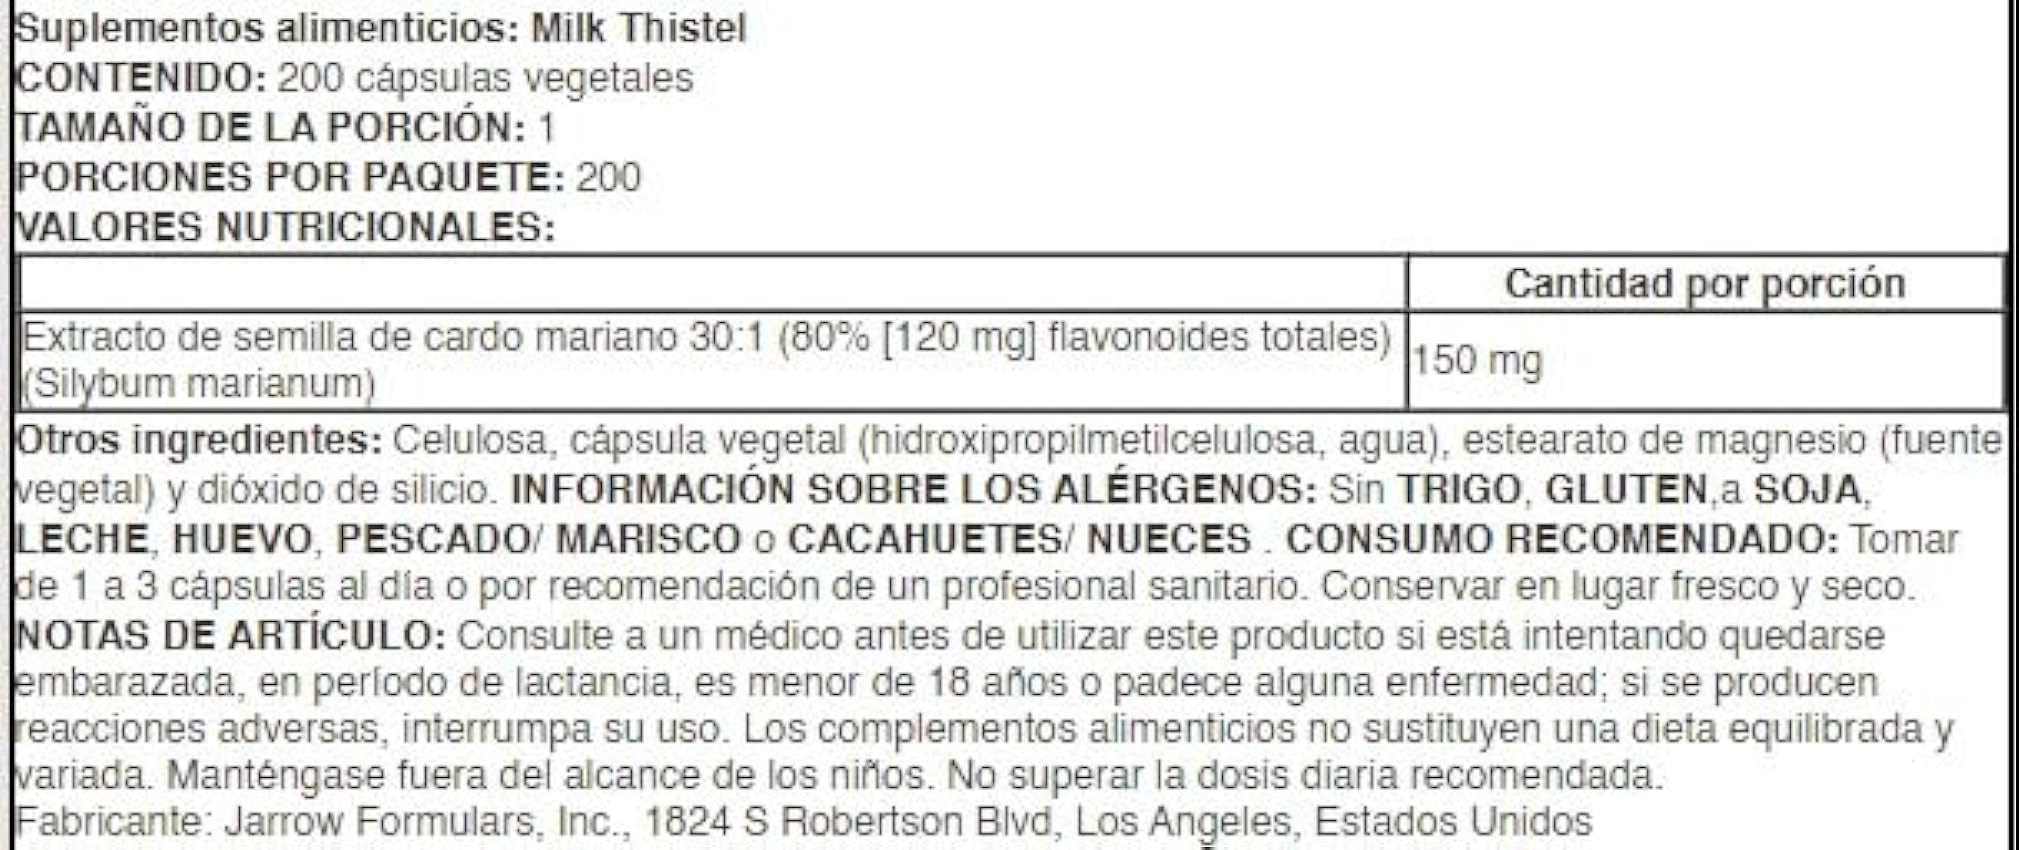 Jarrow Formulas Milk Thistle, 150mg - 200 Cápsulas Vegetales - Salud del Hígado y Antioxidante, Suplemento Natural para Desintoxicación jcElRMdZ